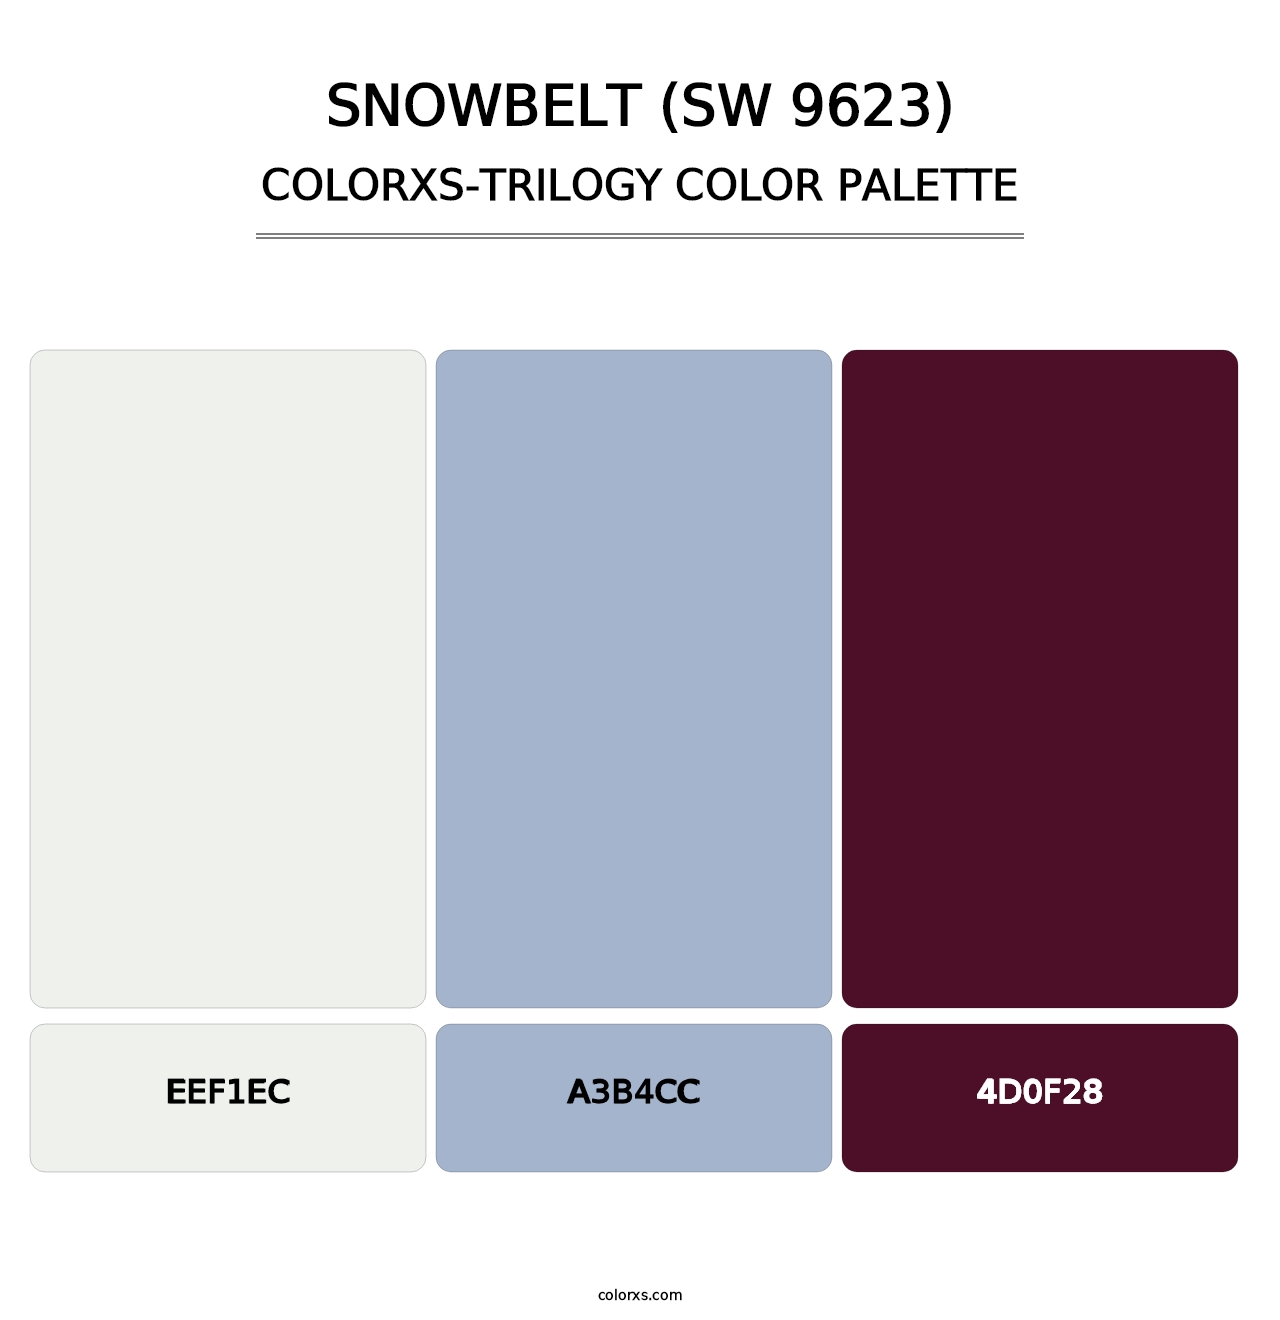 Snowbelt (SW 9623) - Colorxs Trilogy Palette